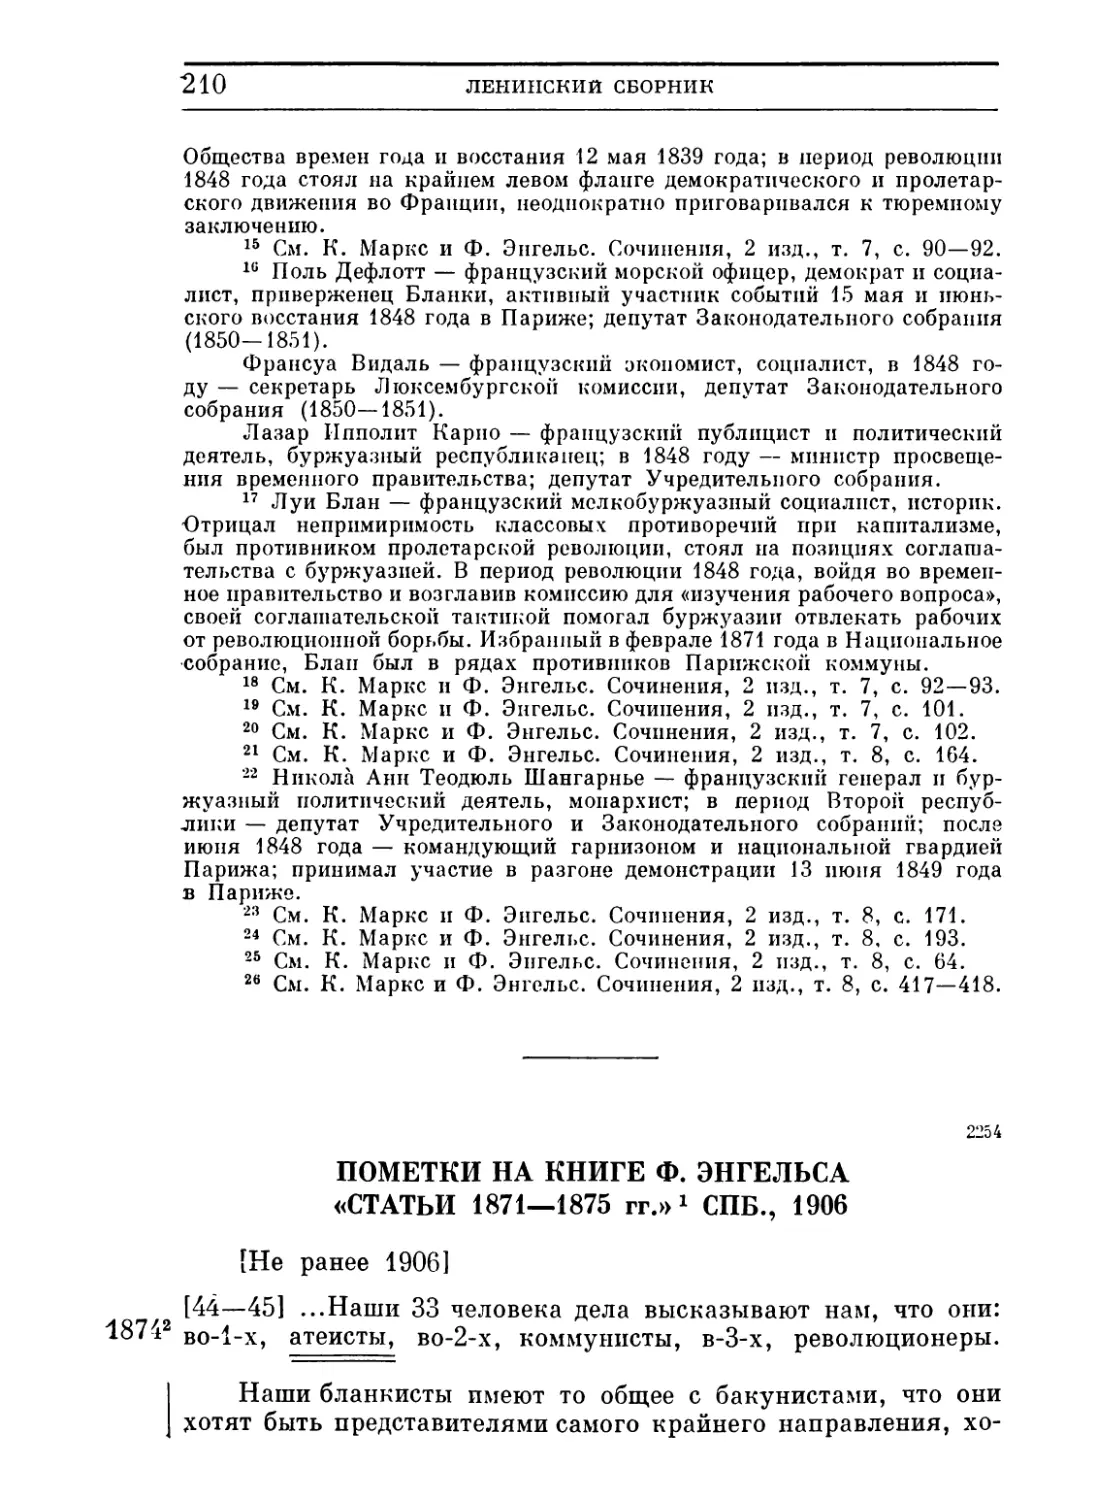 Пометки на книге Ф. Энгельса «Статьи 1871 —1875 гг.». СПБ., 1906